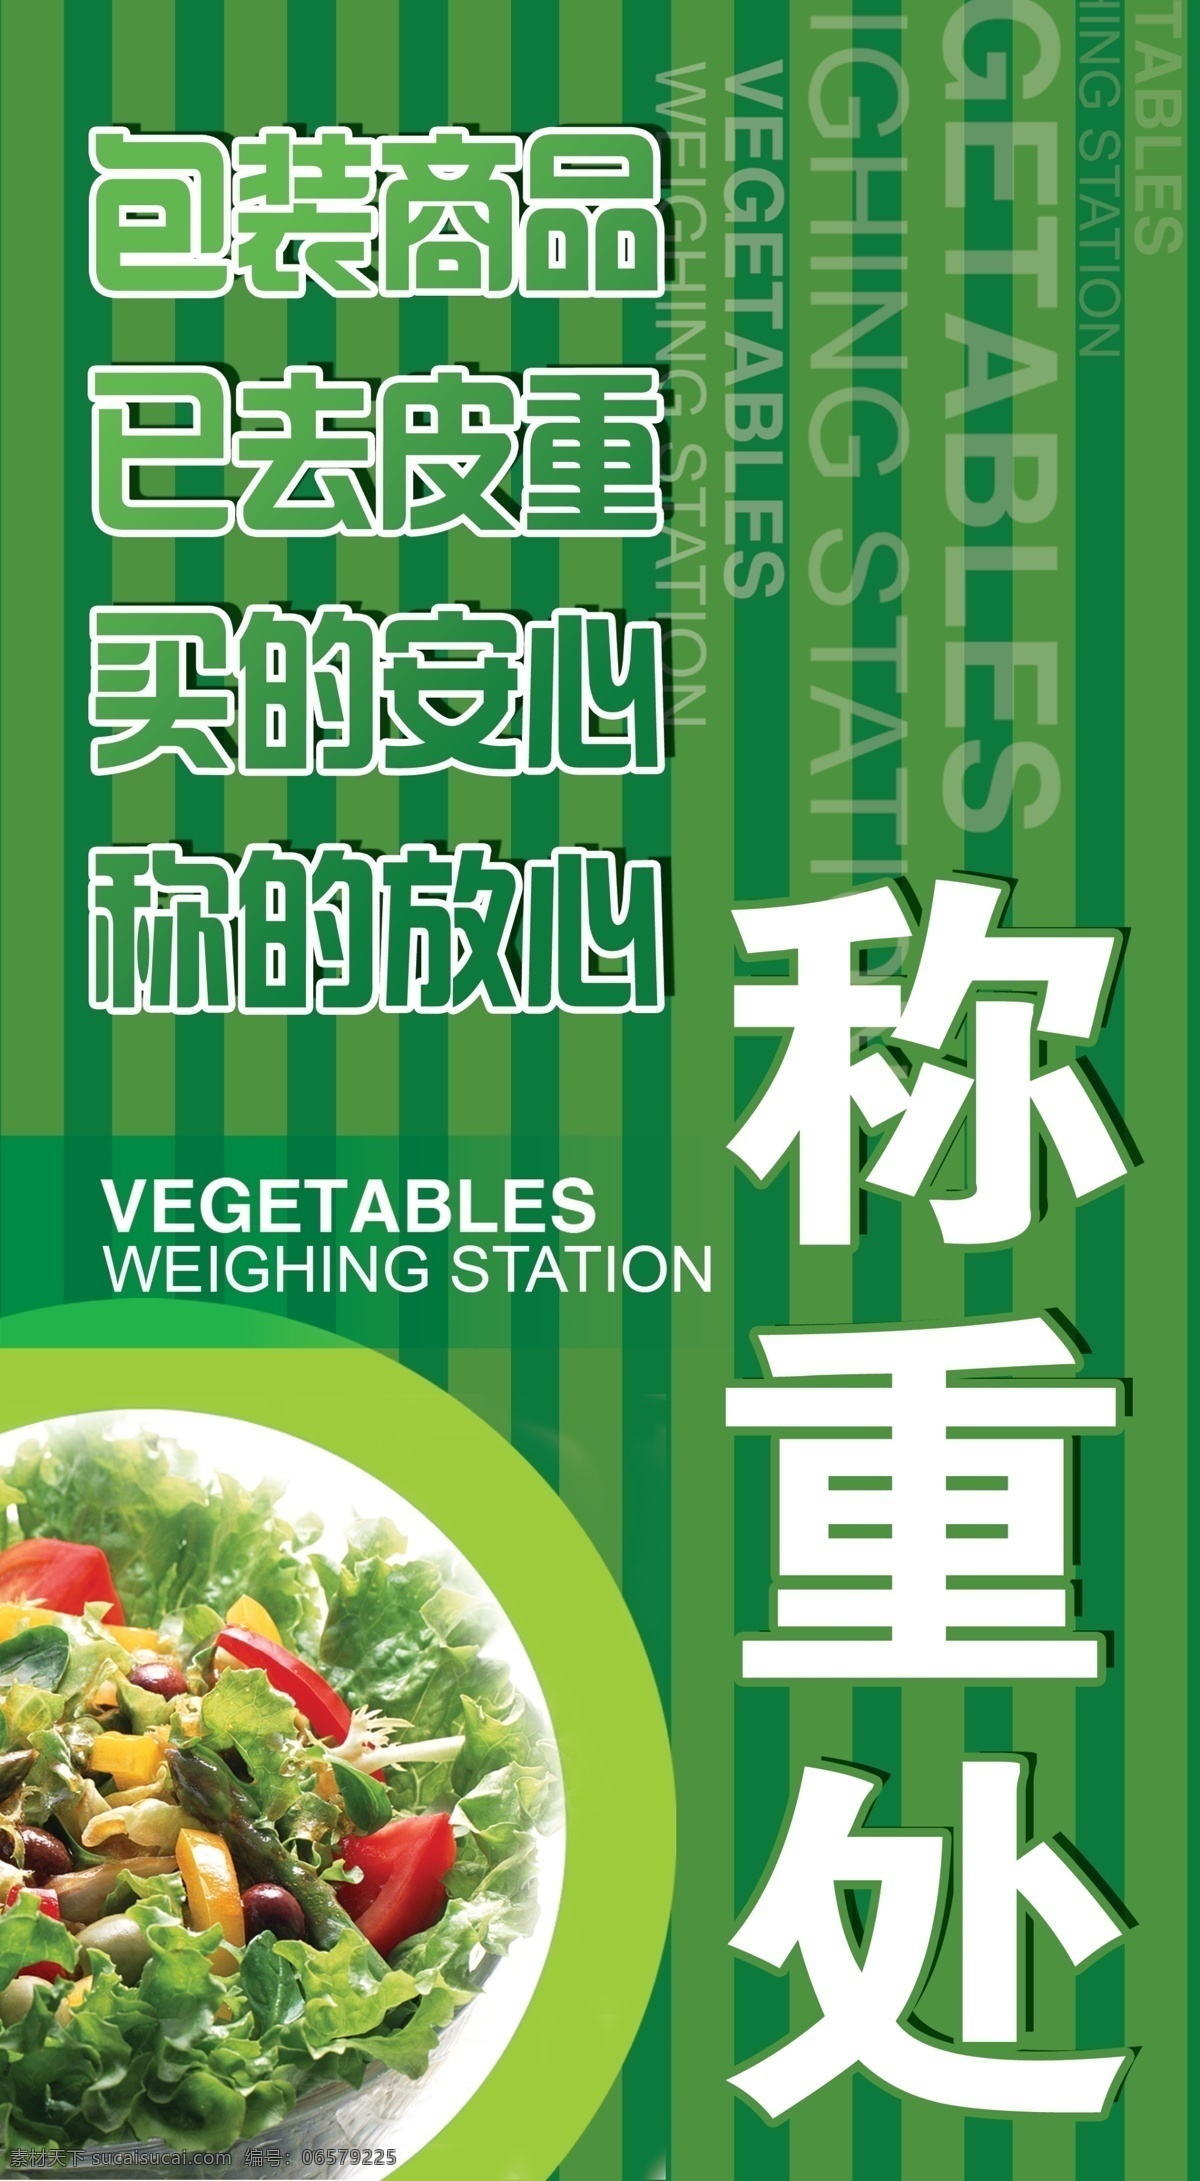 称重处海报 绿色 条纹 蔬菜 包装 商品 买的安心 称的放心 广告设计模板 源文件